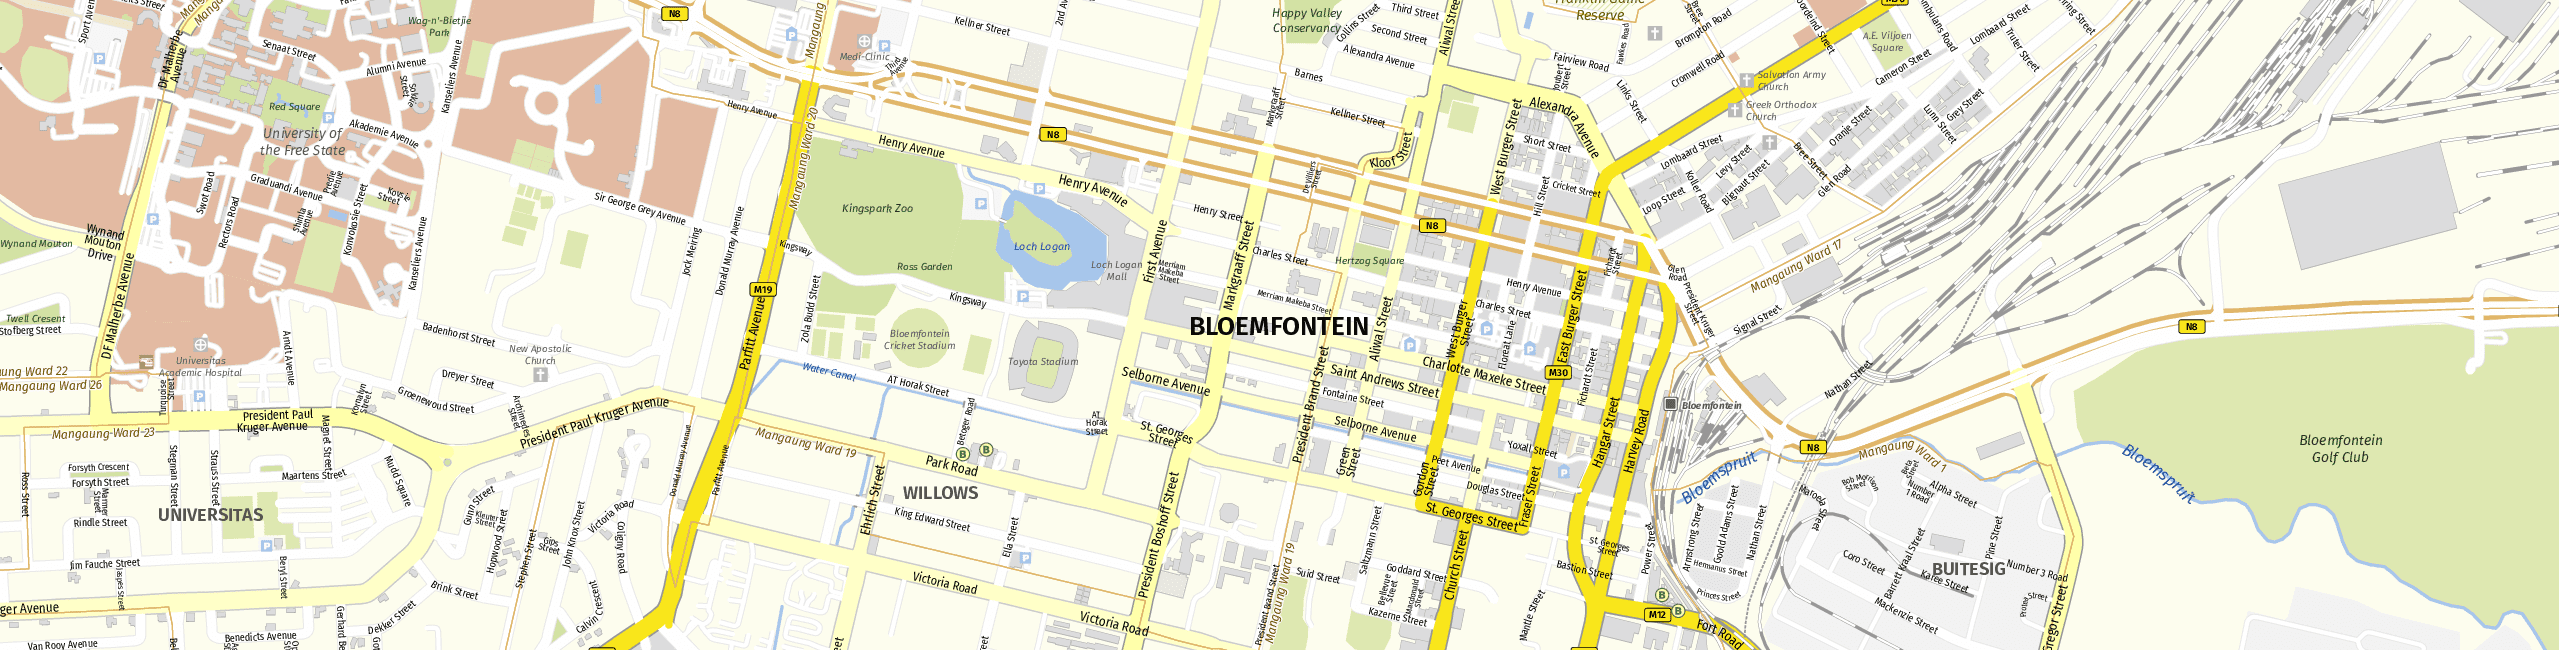 Stadtplan Bloemfontein zum Downloaden.